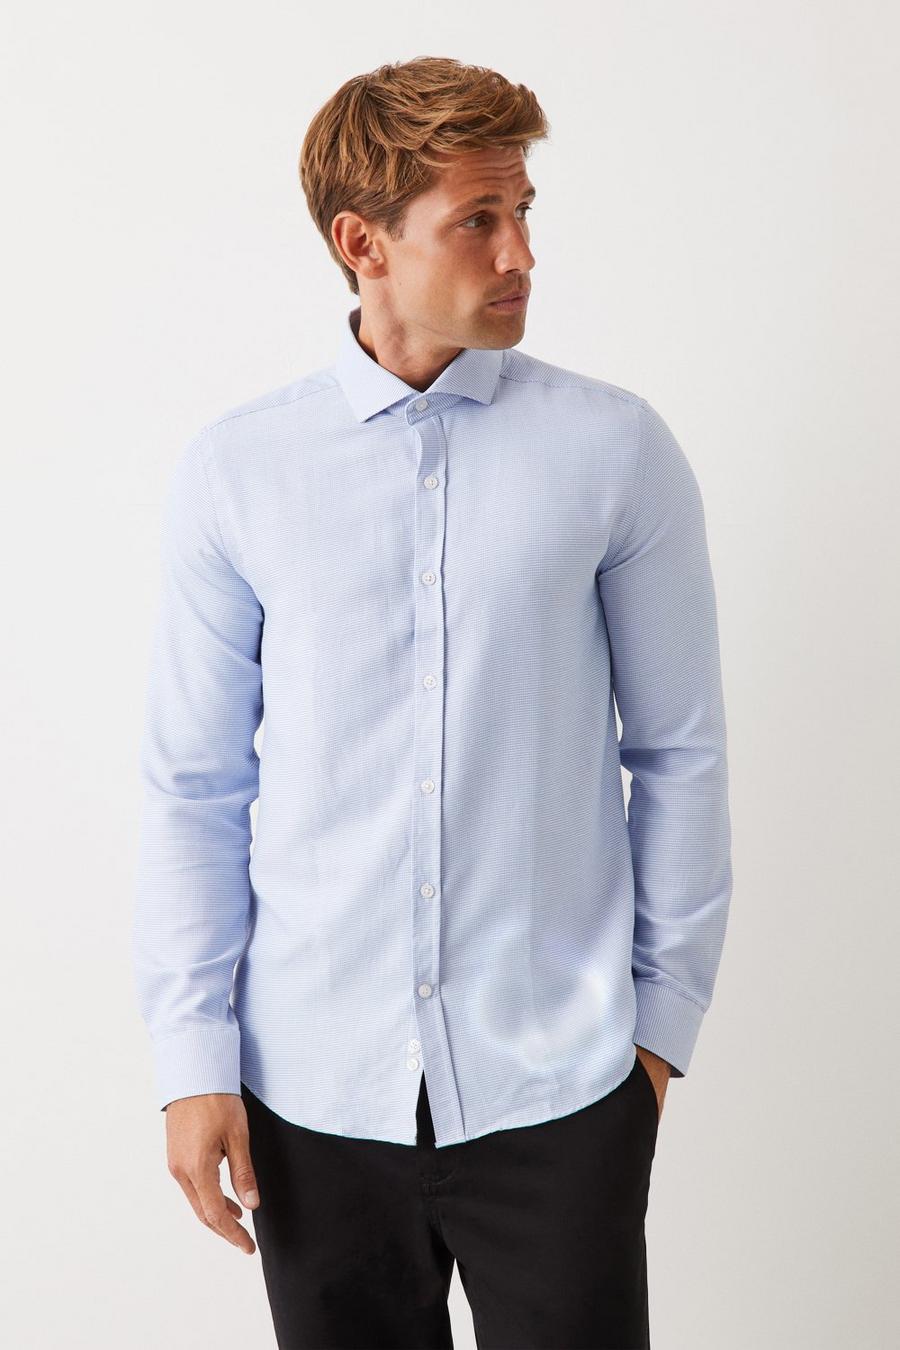 Blue Tailored Fit Long Sleeve Puppytooth Cutaway Collar Shirt